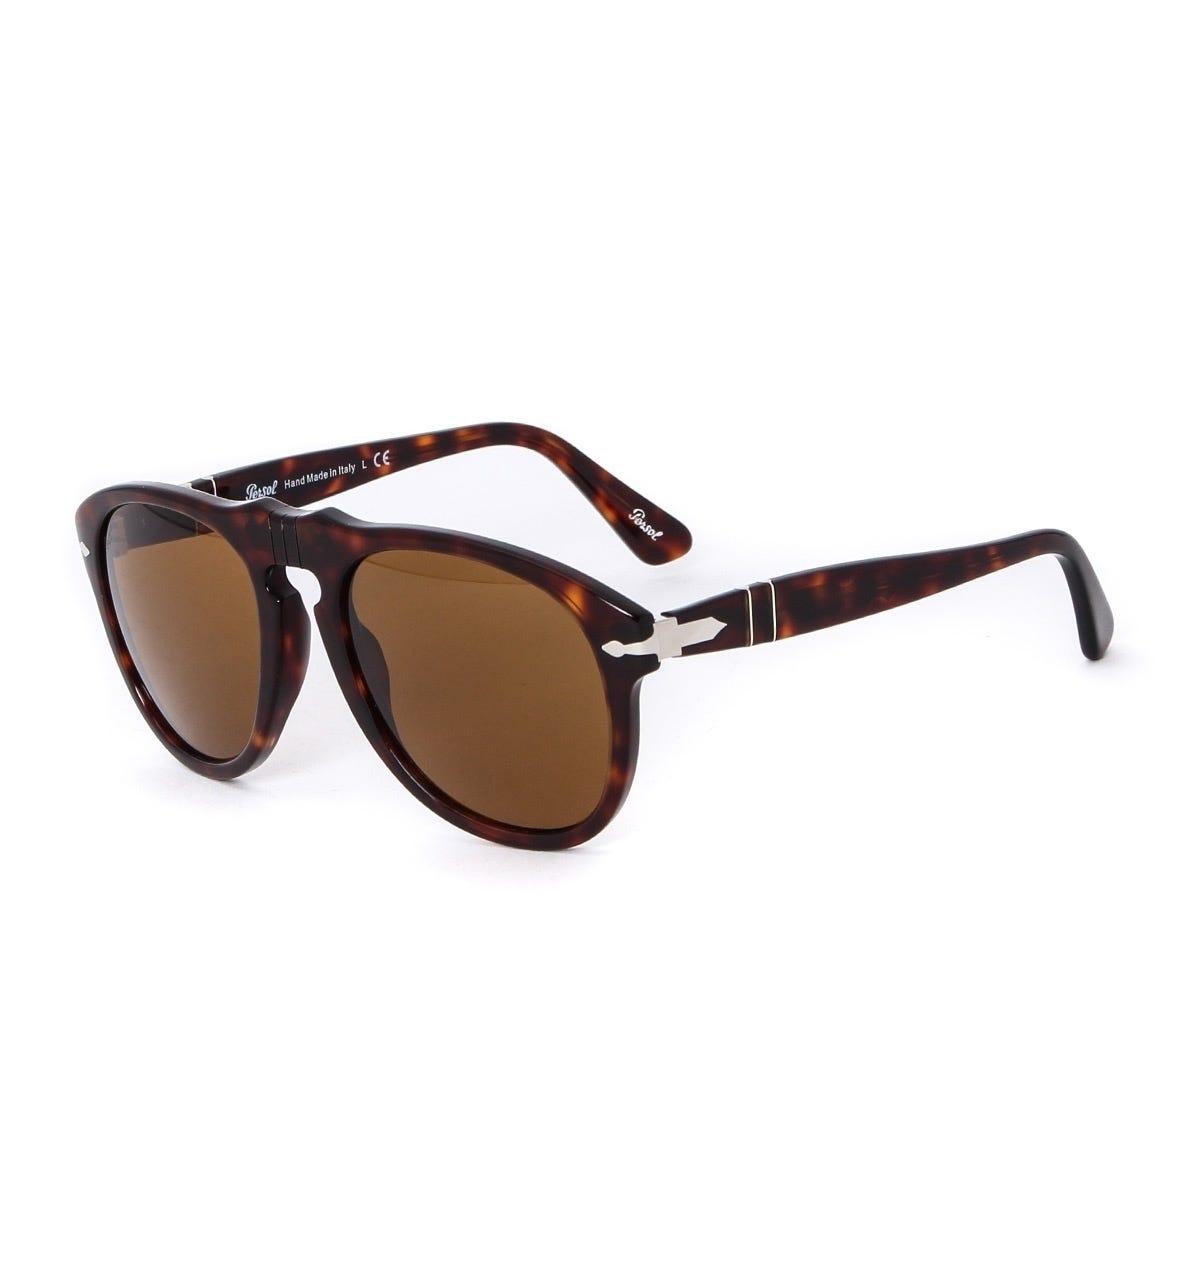 Persol 649 Havana Brown Acetate Aviator Sunglasses for Men - Lyst